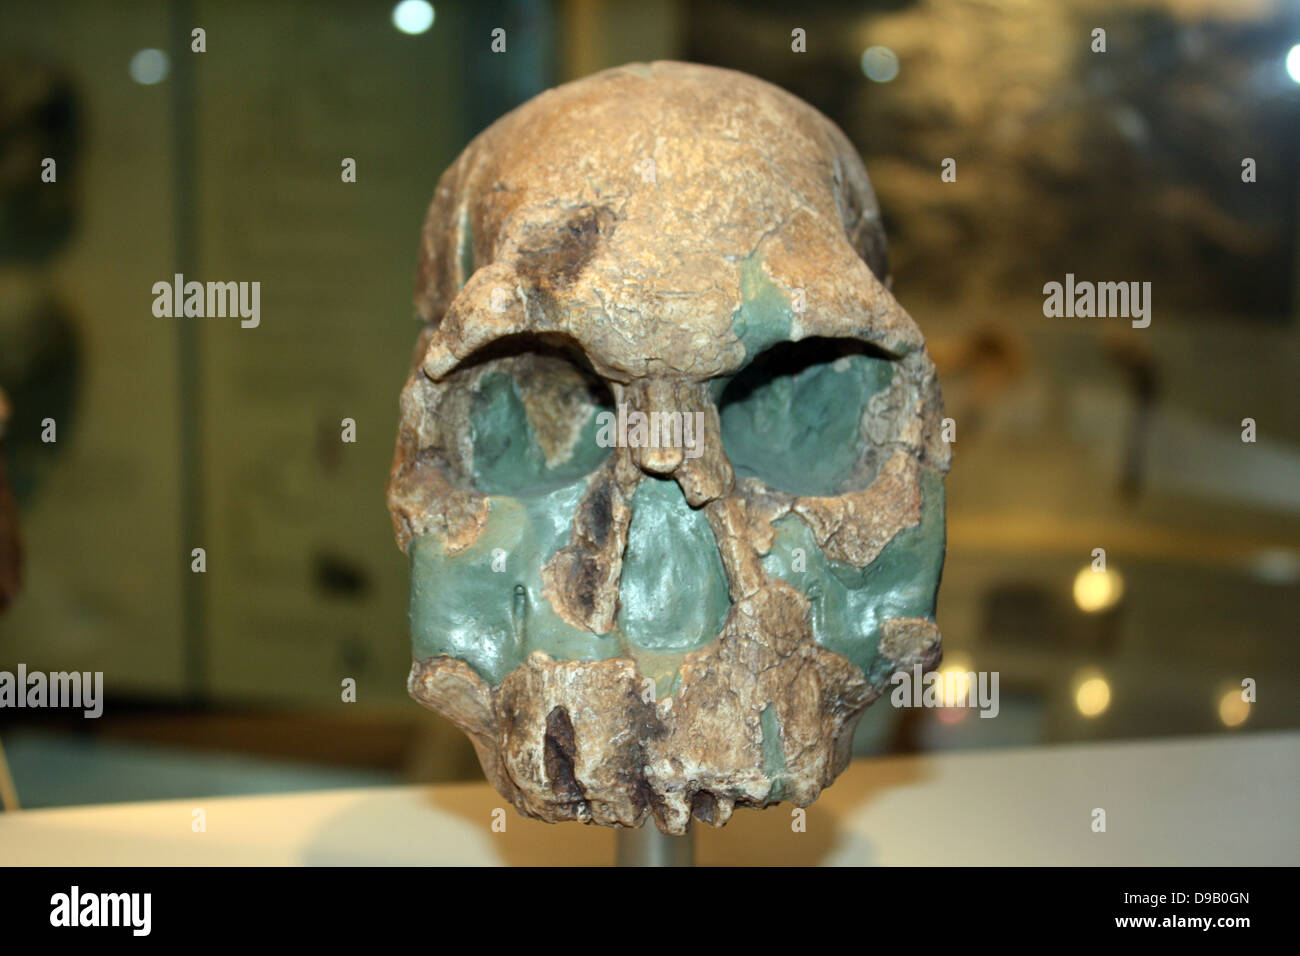 Ersten Menschen. Einige Wissenschaftler glauben, dass dies der früheste Beweis der Menschen. Es ist etwa 1,9 Millionen Jahre alt und gehört zu der Spezies "Homo rudolfensis" (die manchmal in Homo habilis enthalten). Es hat ein größeres Gehirn, behält aber die Flache und großen Zähnen von den australopithecinen. Werkzeuge aus Stein im gleichen Alter haben auch entdeckt worden, aber nicht am gleichen Ort befinden wie dieses Fossil. Stockfoto